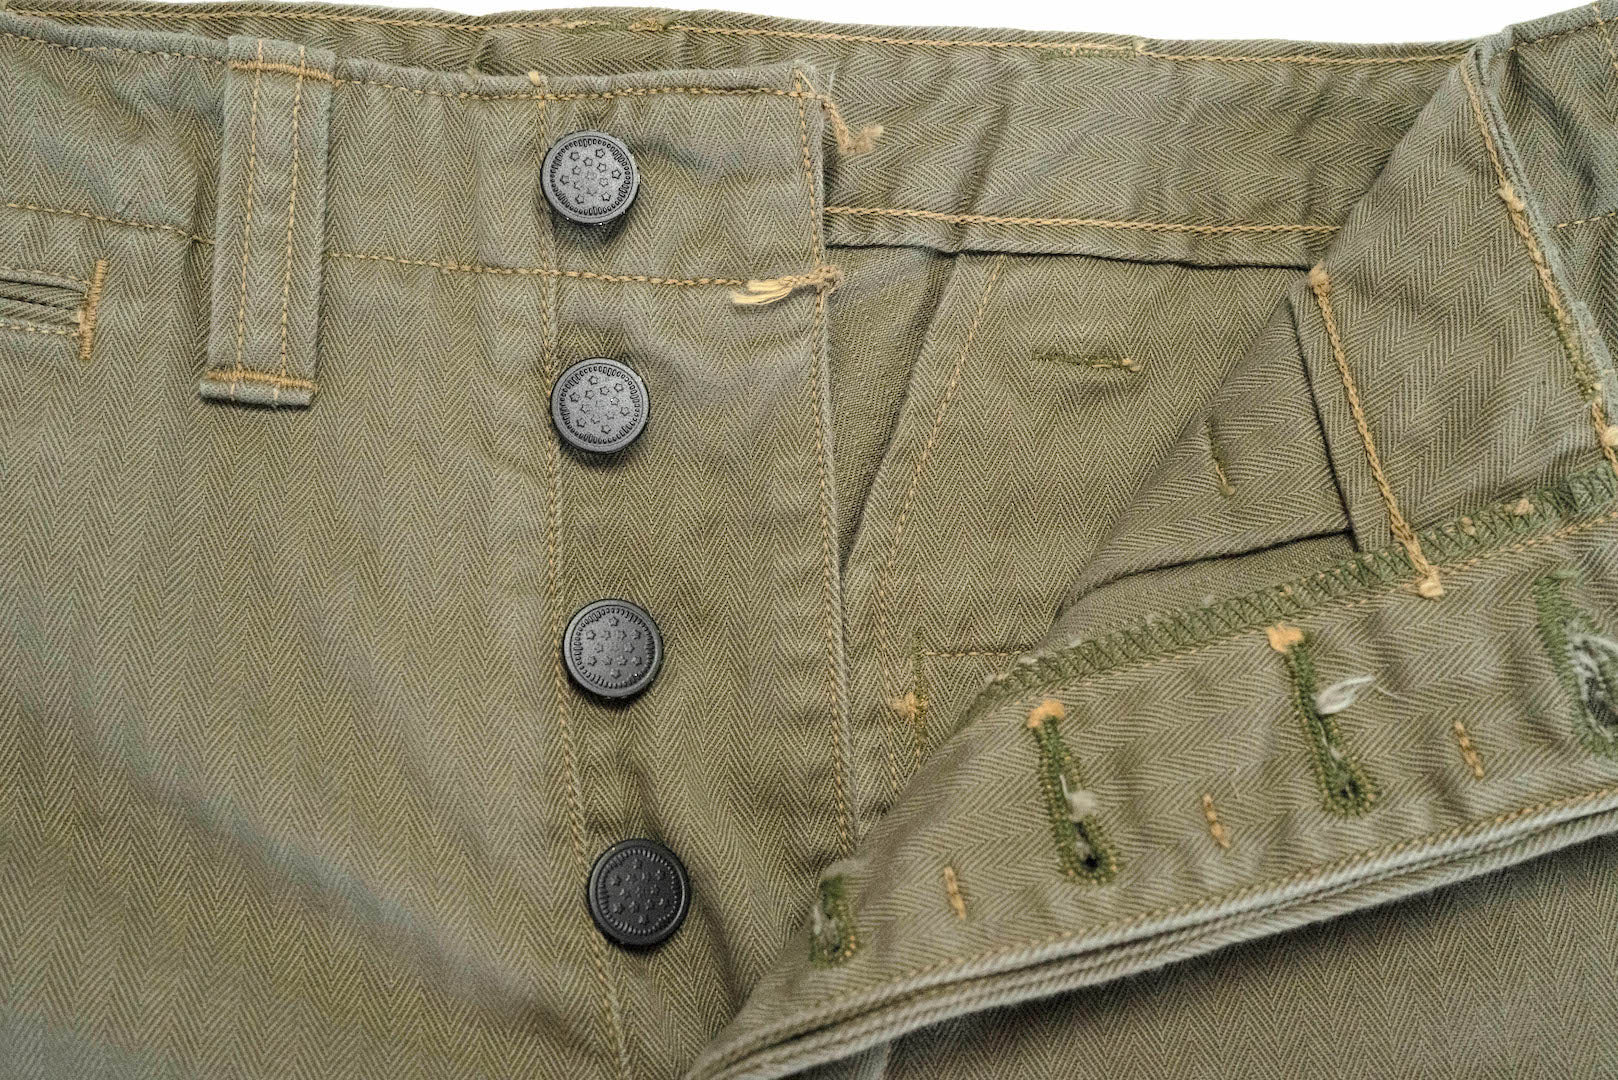 Freewheelers M-1942 HBT Cut-Length Trousers (Olive)